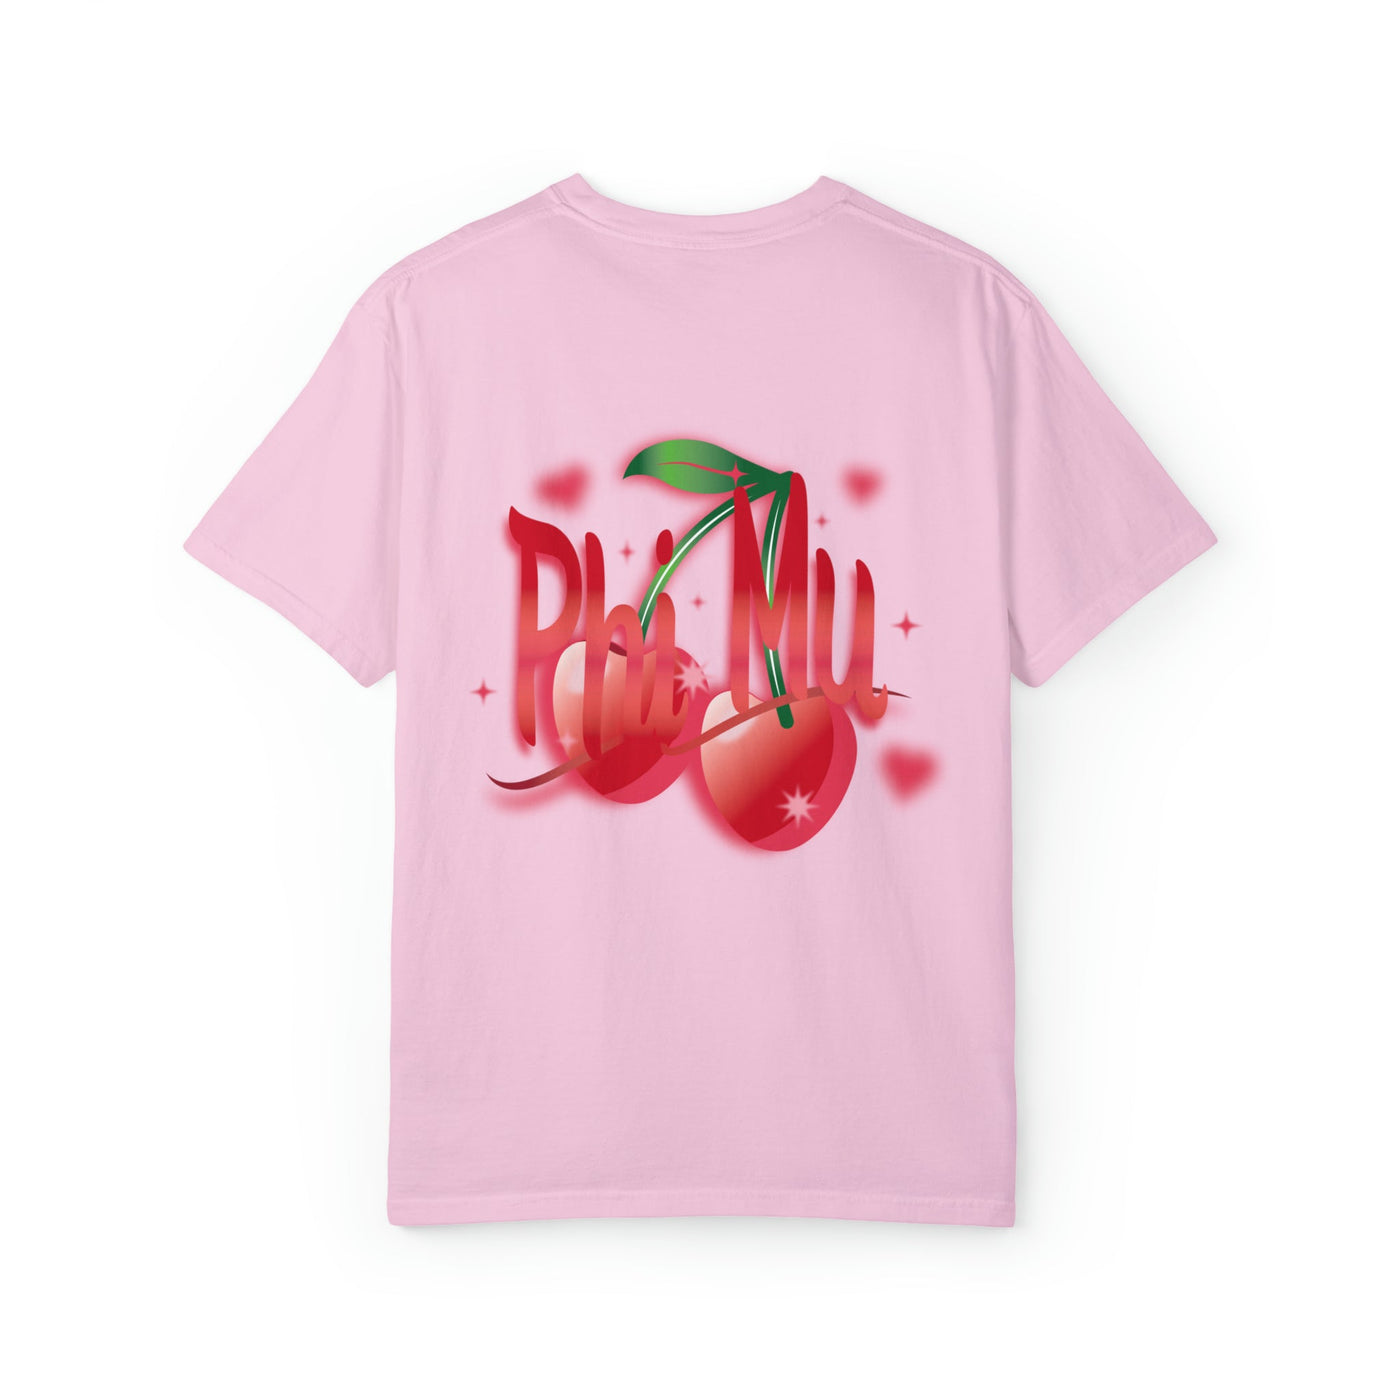 Phi Mu Cherry Airbrush Sorority T-shirt